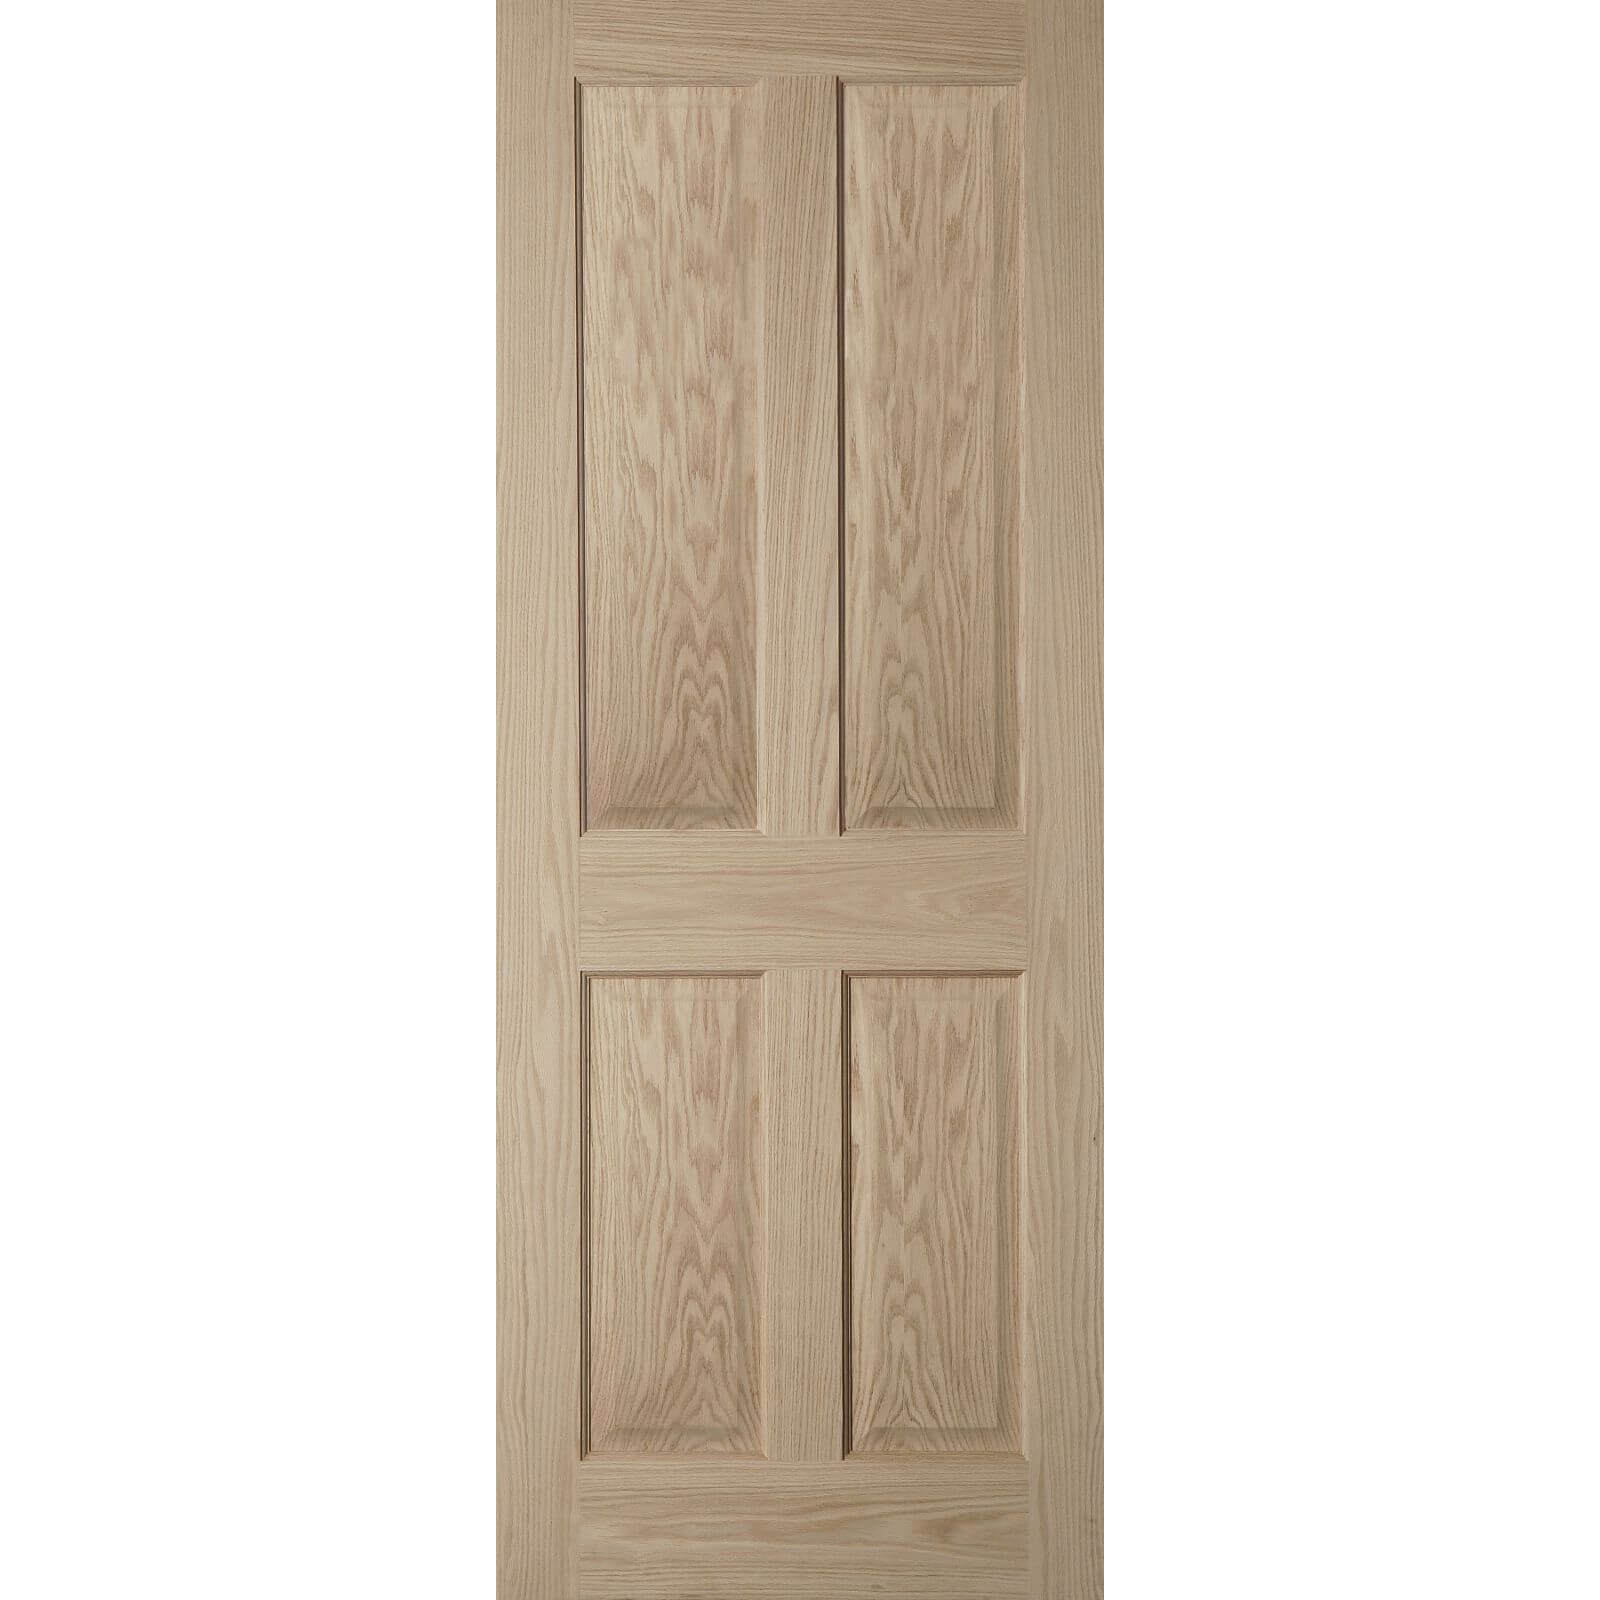 4 Panel Oak Veneer Internal Door - 686mm Wide